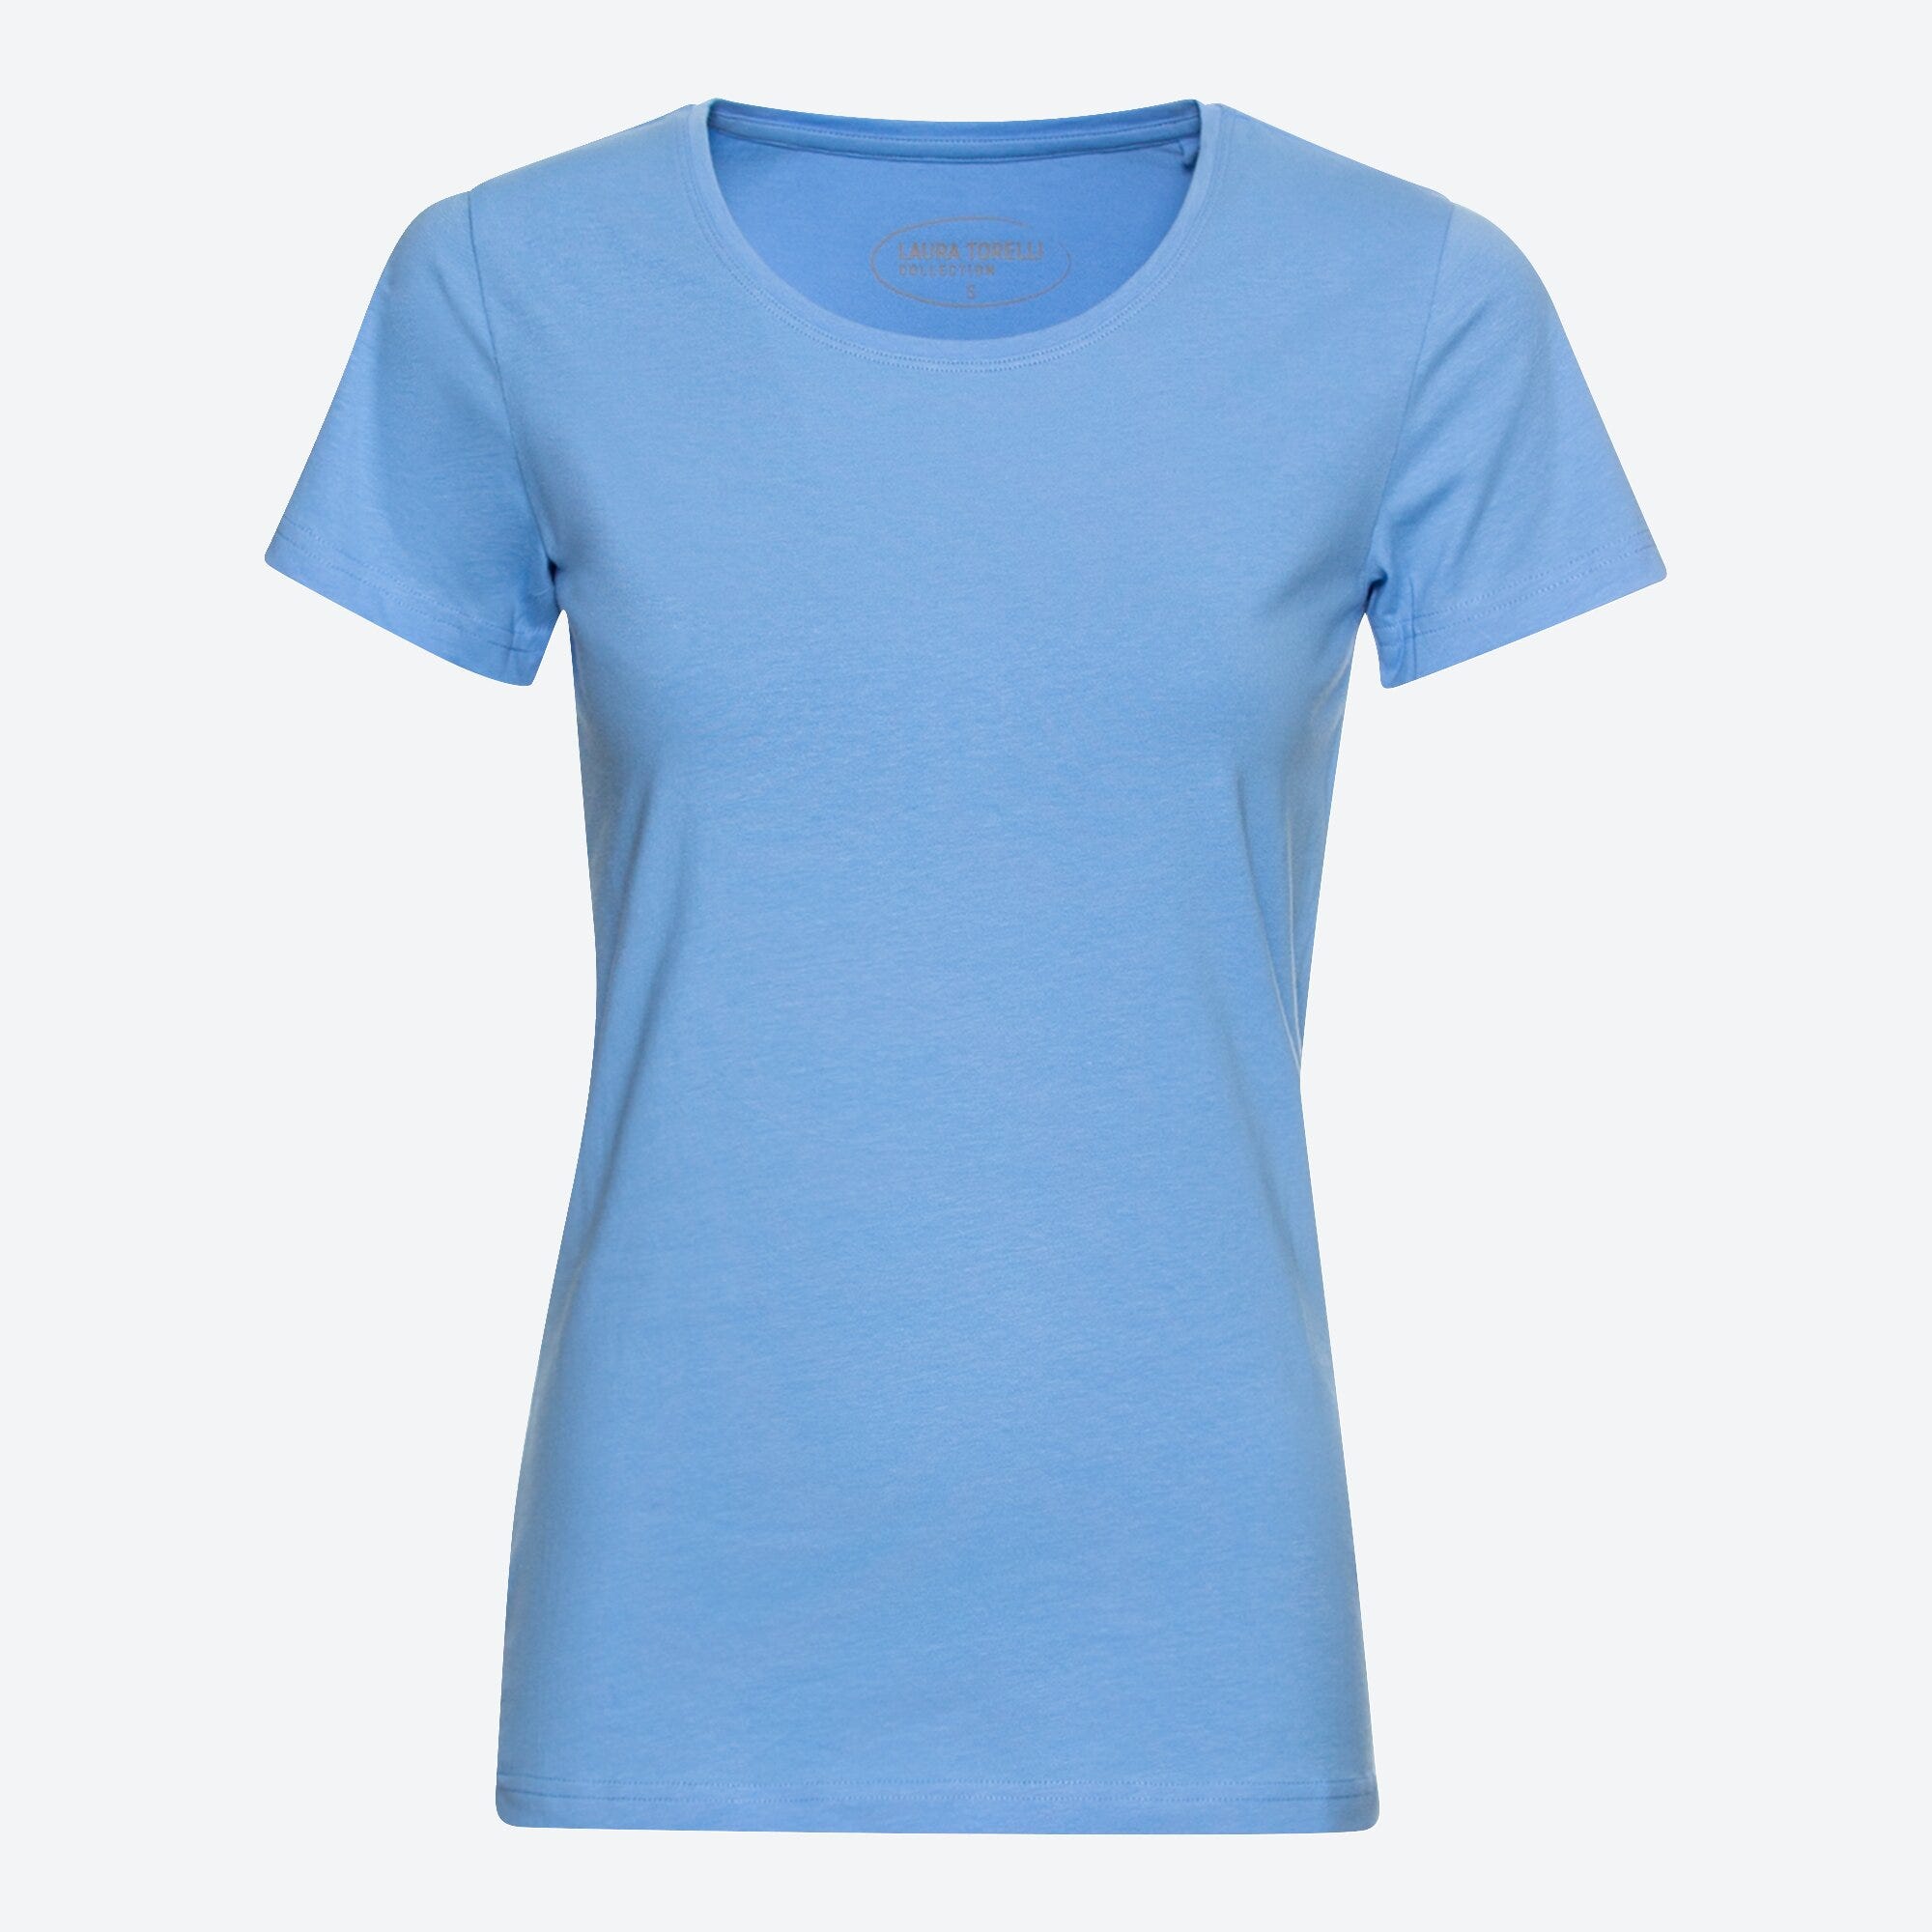 Damen-T-Shirt mit hohem Baumwoll-Anteil